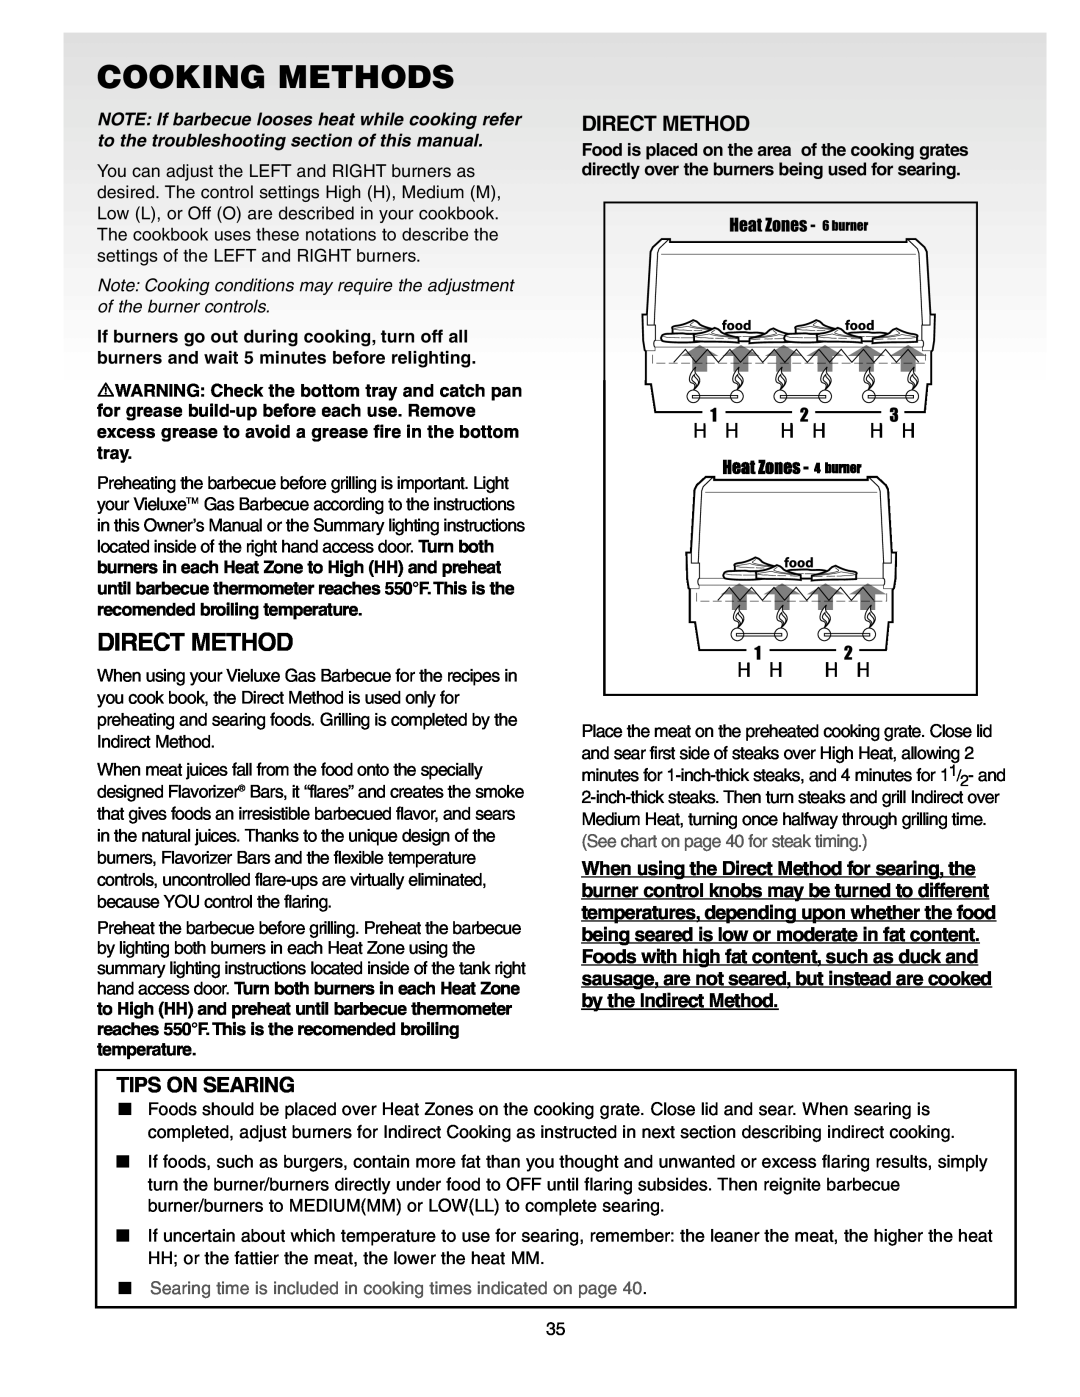 Weber Gas Burner manual Cooking Methods, Direct Method 